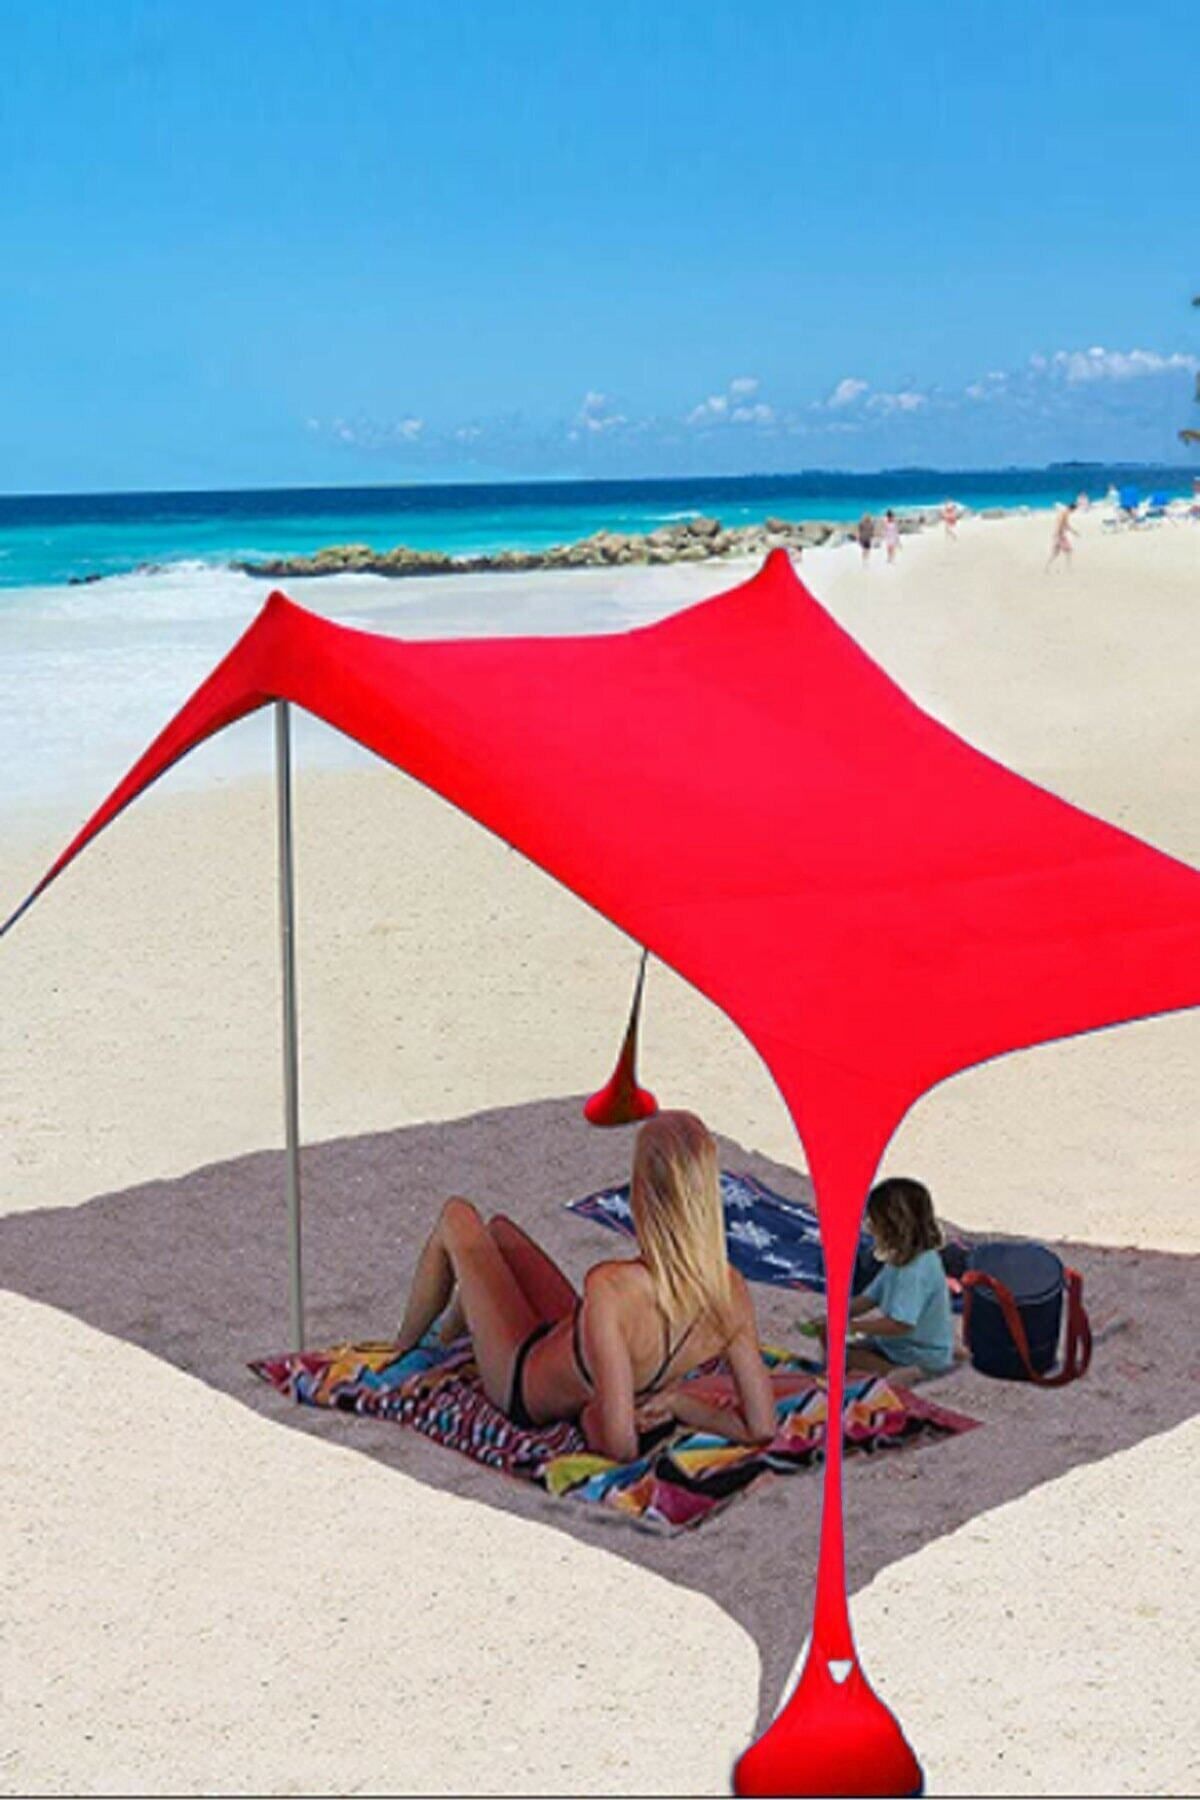 Bundera Markise Gölgelik Tente Plaj Şemsiyesi Bahçe Teras Kamp Piknik Güneşlik Tatil Şemsiye 2.3 Metre